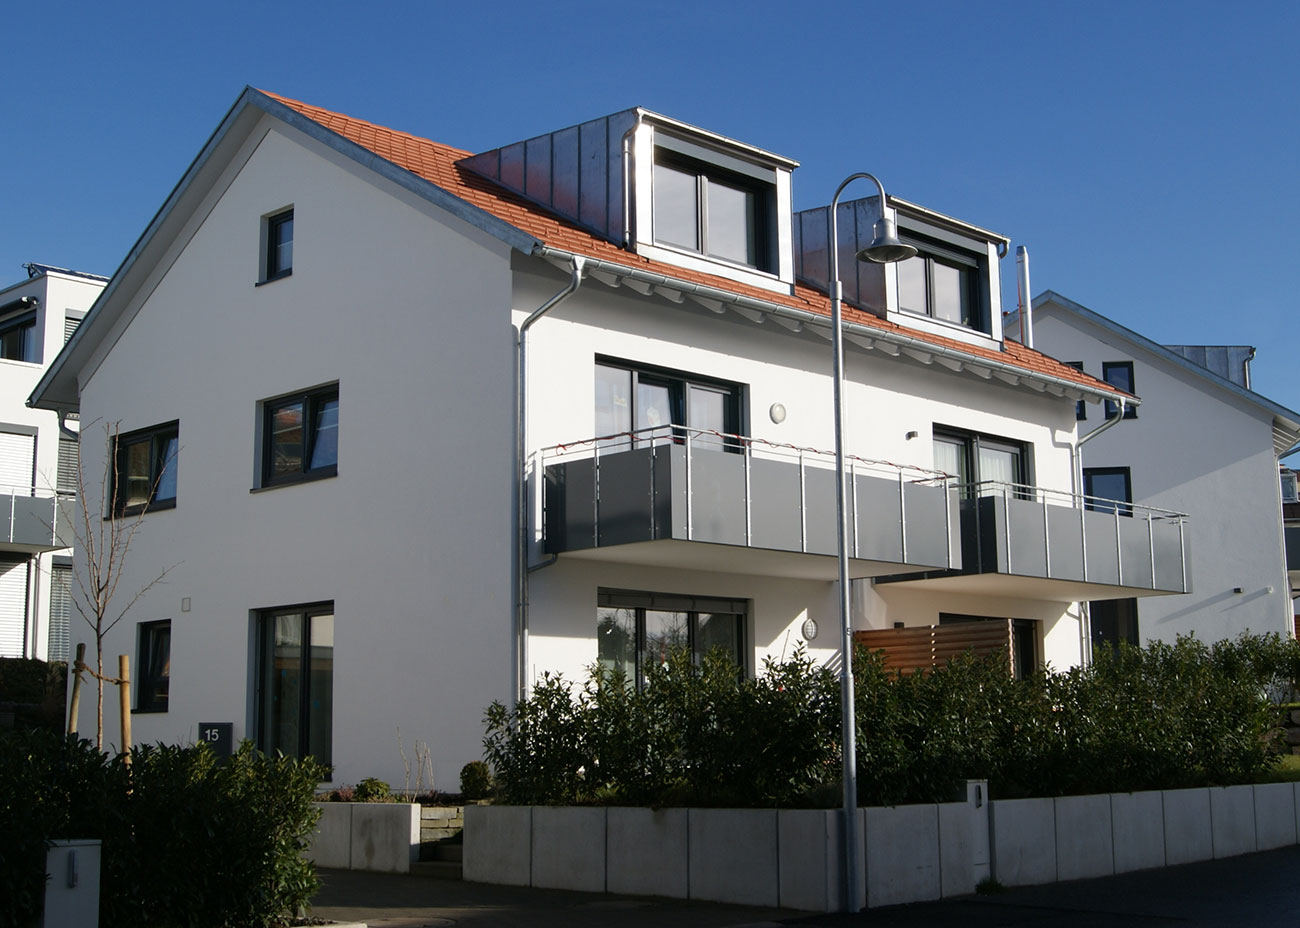 Neubau 6 Doppelhaushälften Zimmererweg 11/13 + 15/17 + 19/21, Konstanz